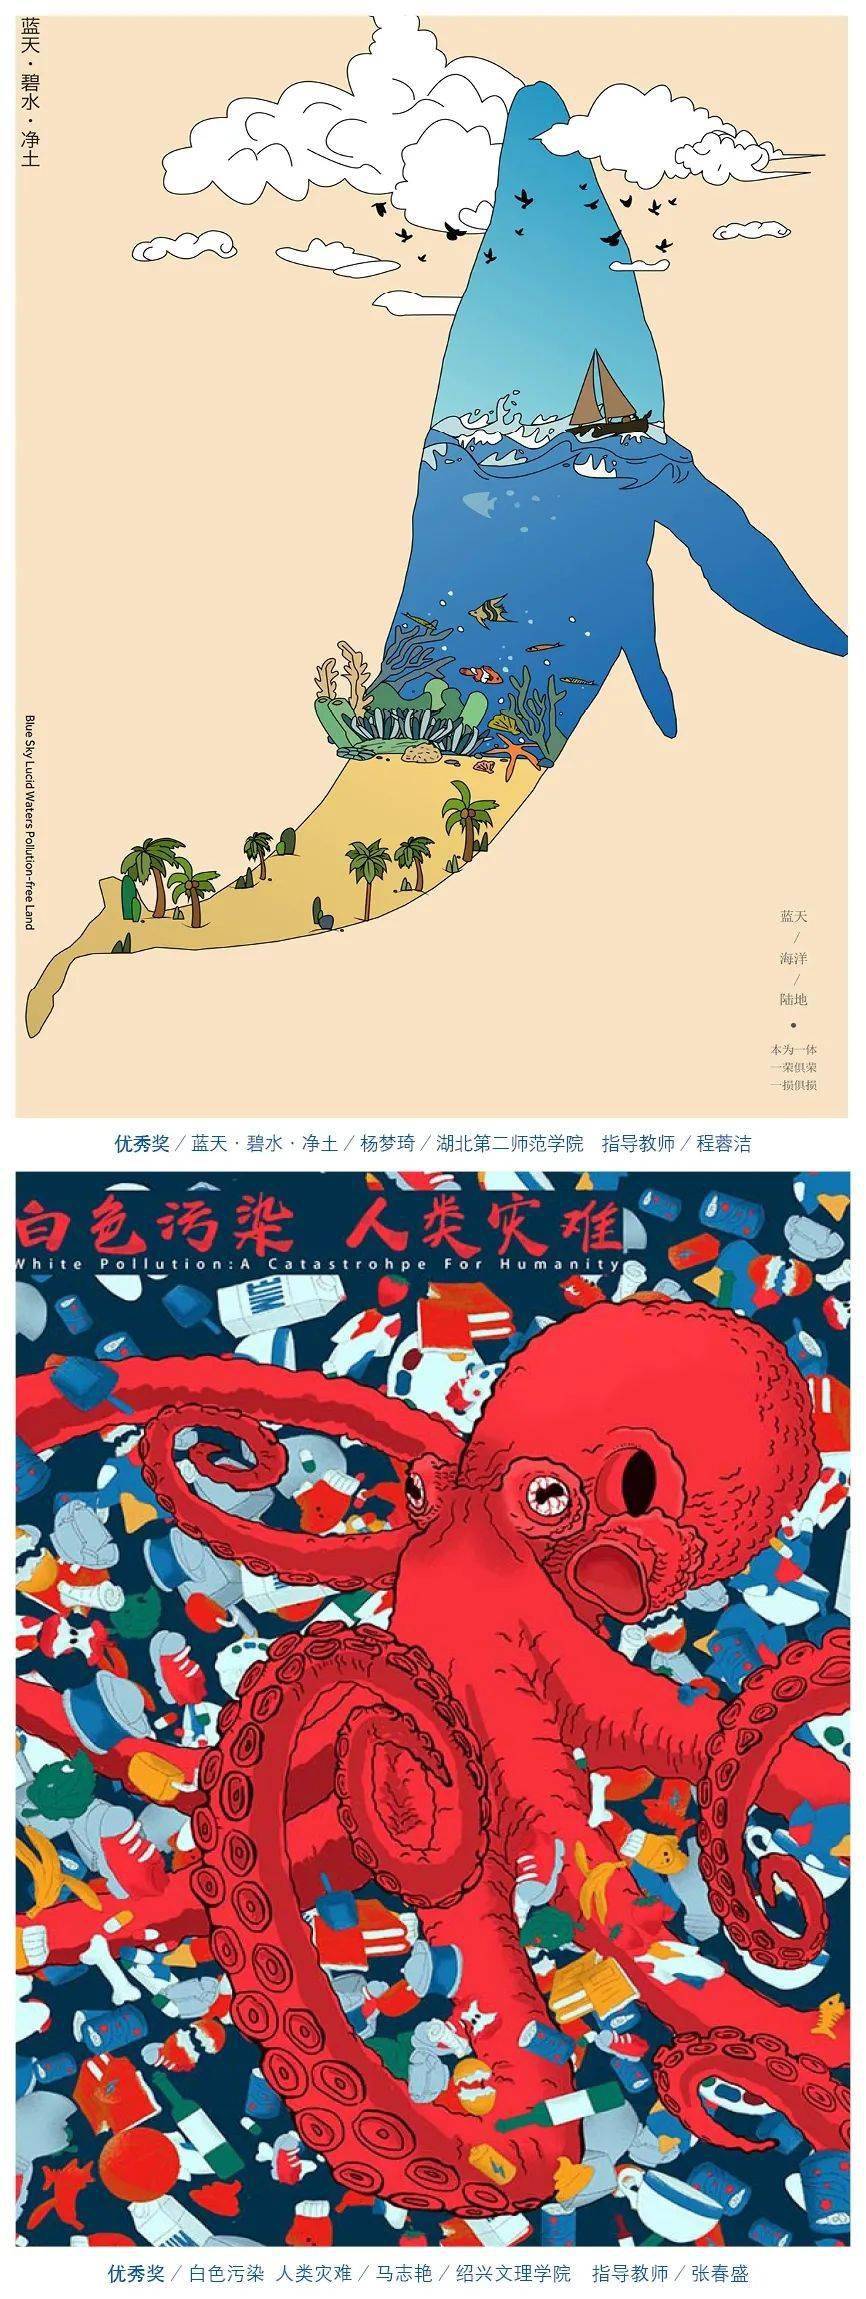 第九届海洋文化创意设计大赛-海报设计获奖创意_作品